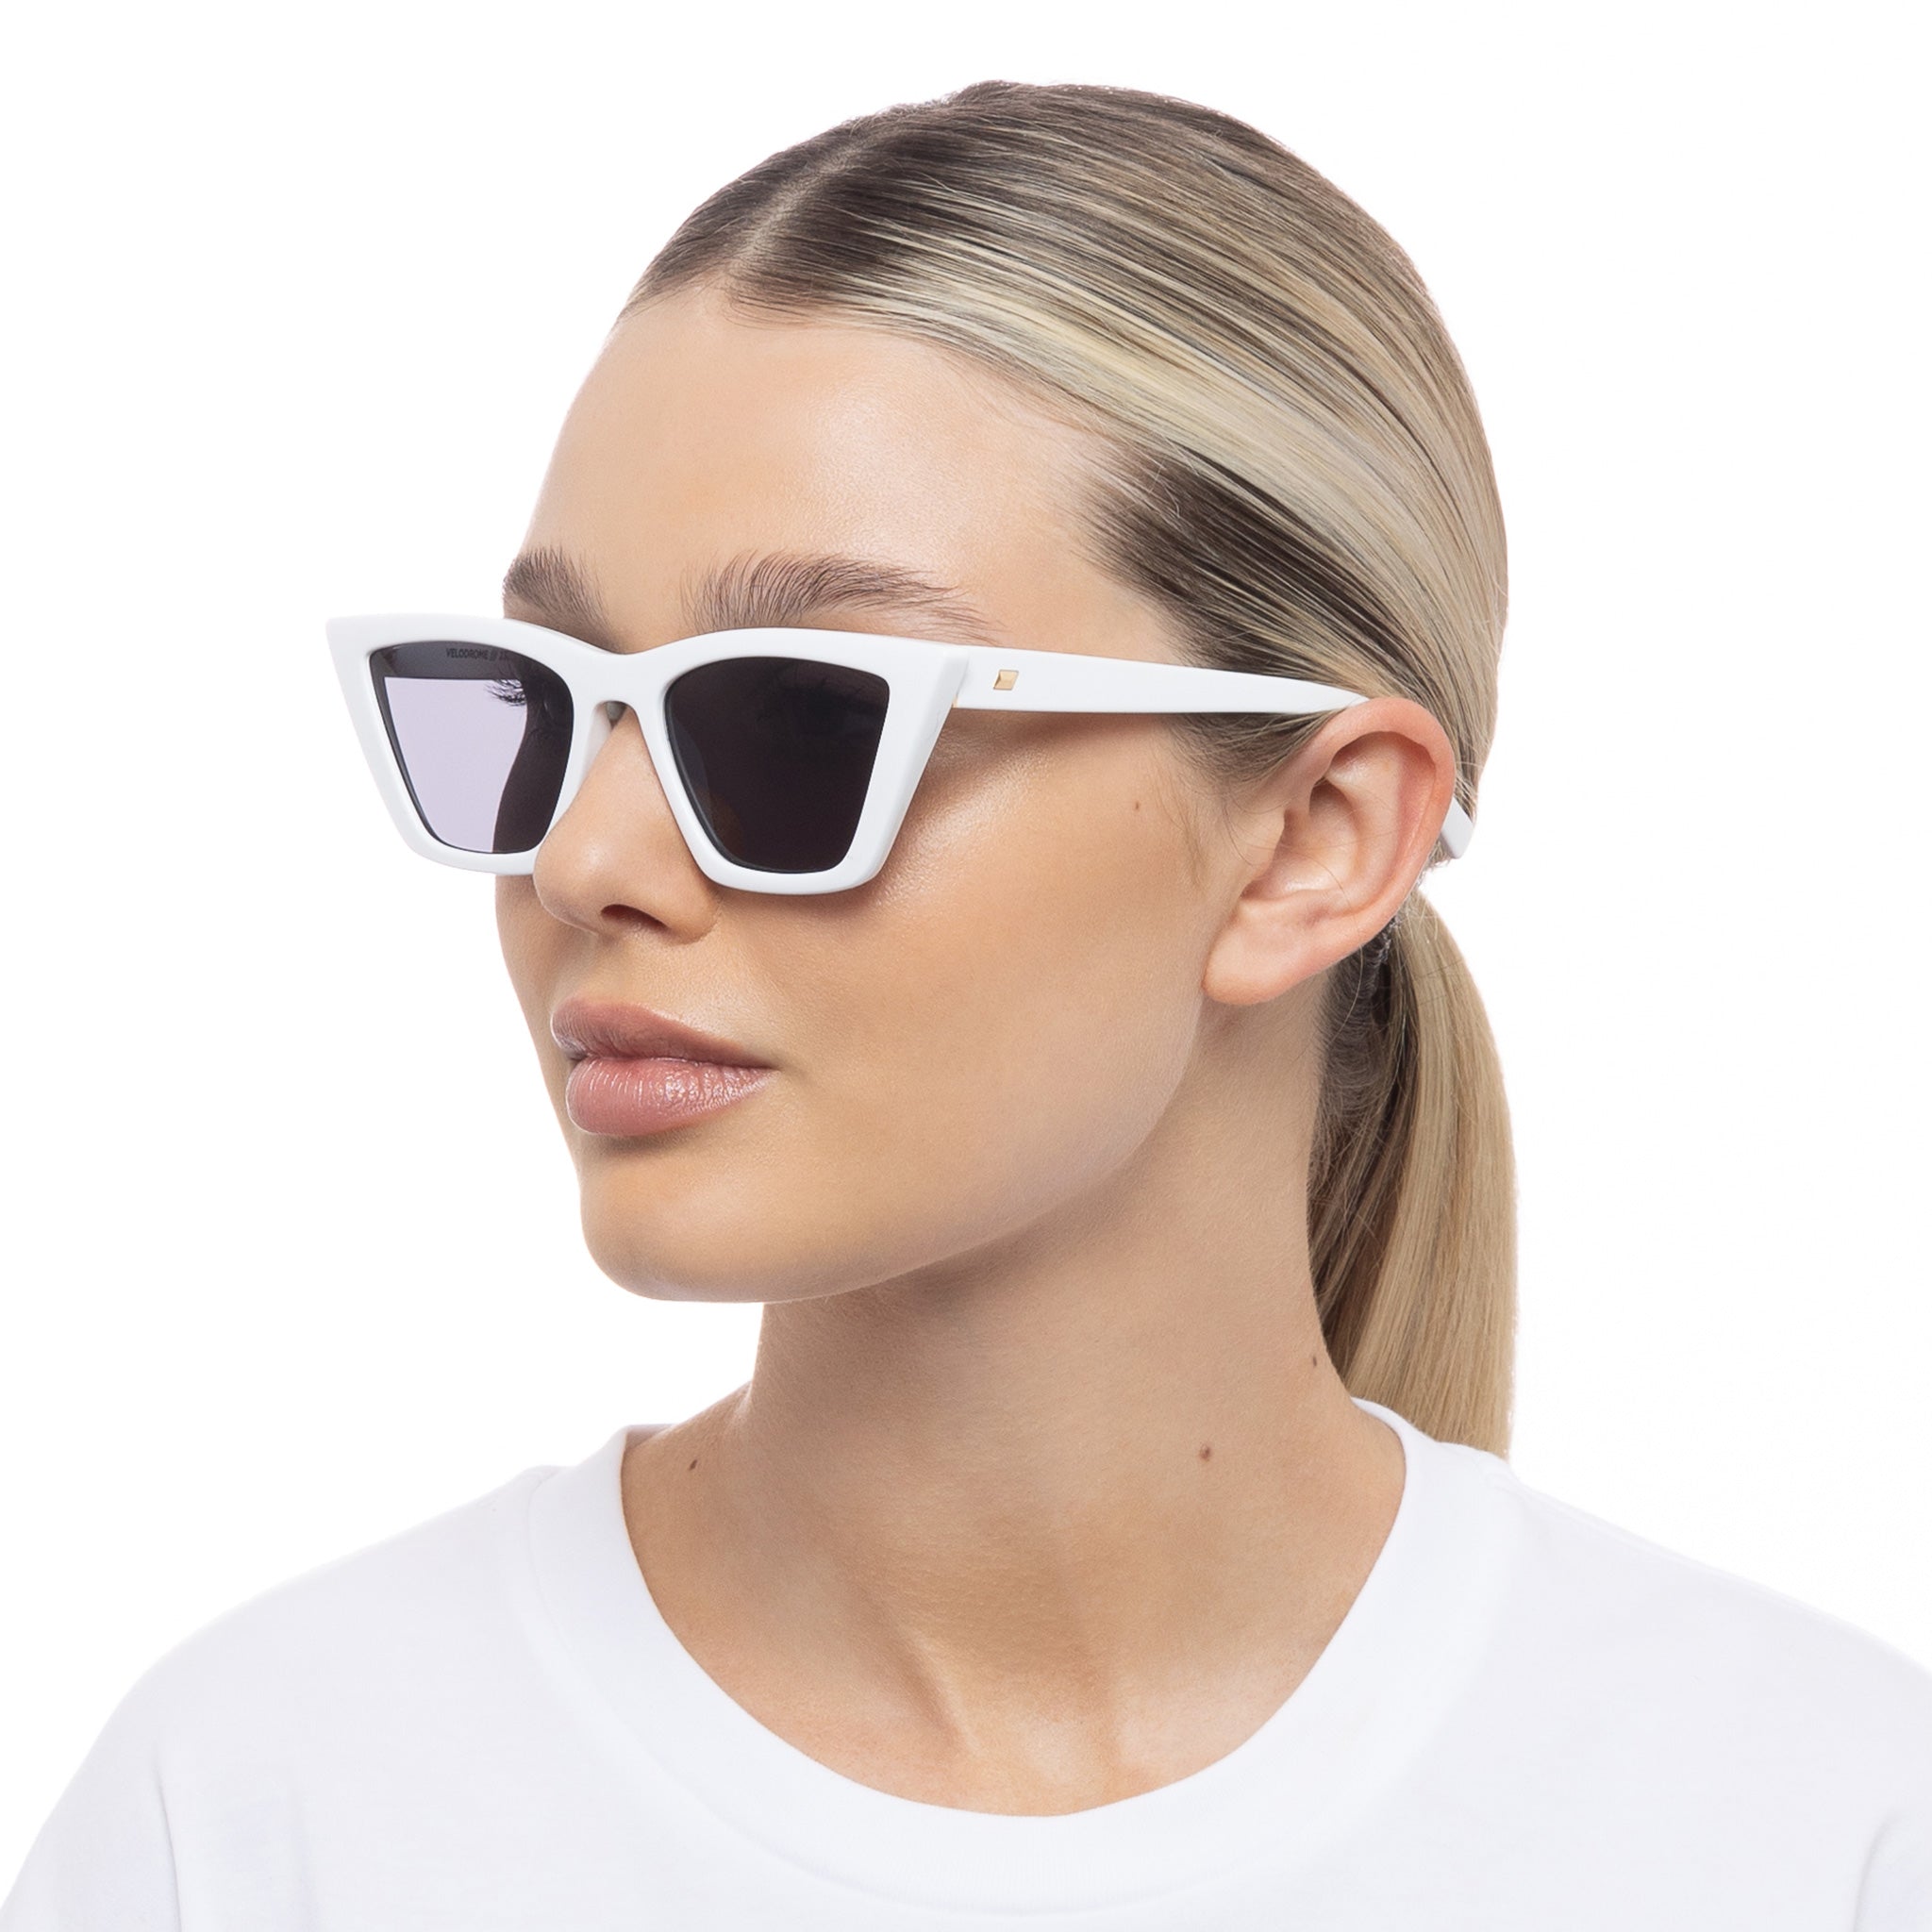 Le Specs Sunglasses Velodrome - White